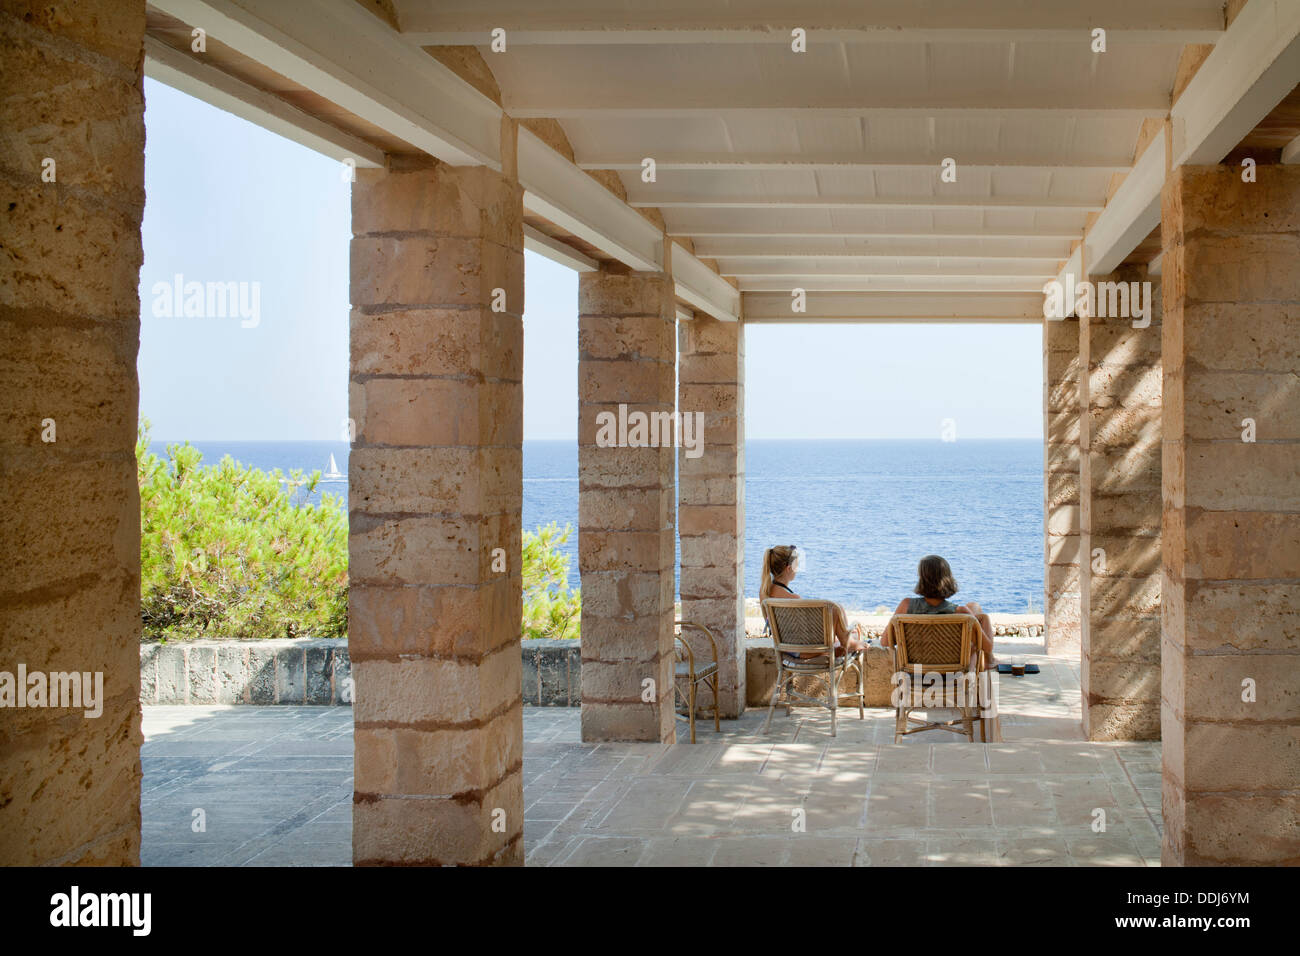 Kann Lis, Mallorca, Spanien. Architekt: Utzon, Jorn, 1971. Haupt-Terrasse und Blick auf das Meer. Stockfoto